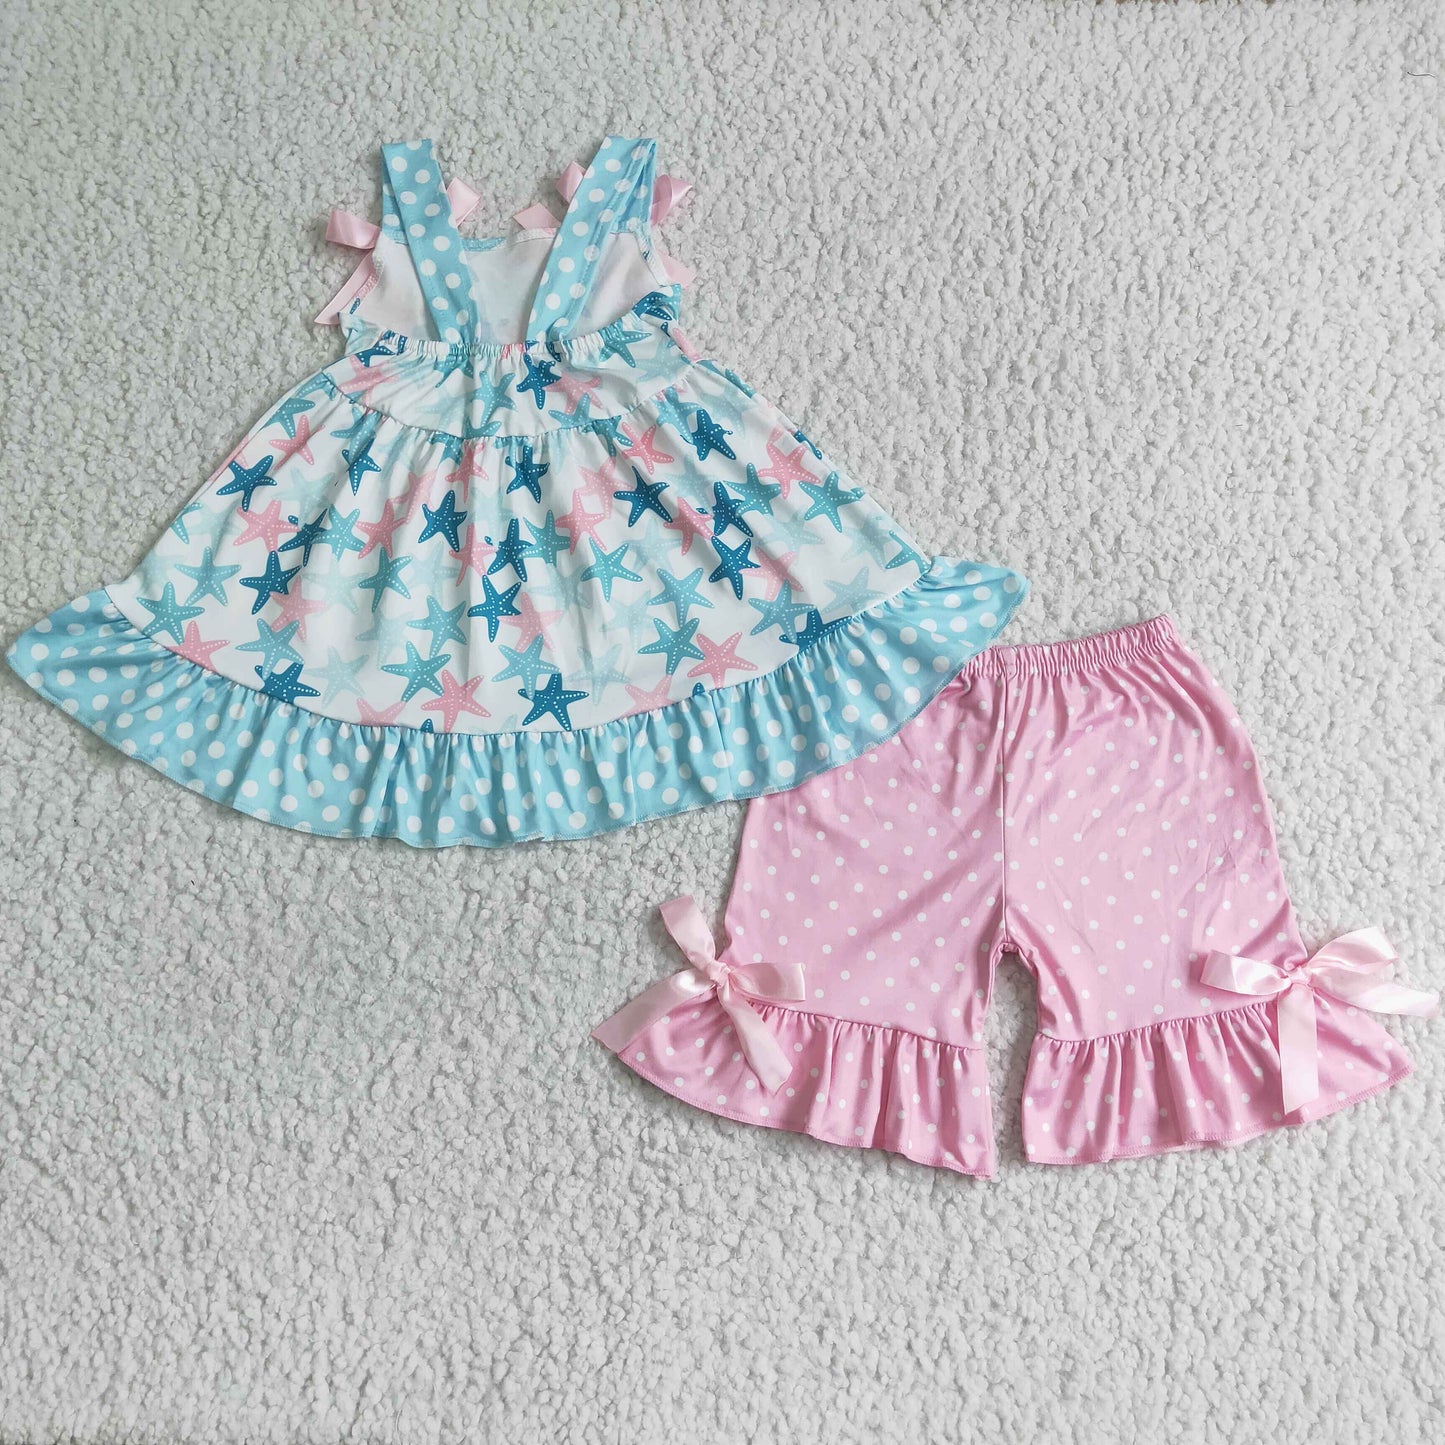 Starfish swing top pink polka dots ruffle shorts summer clothing